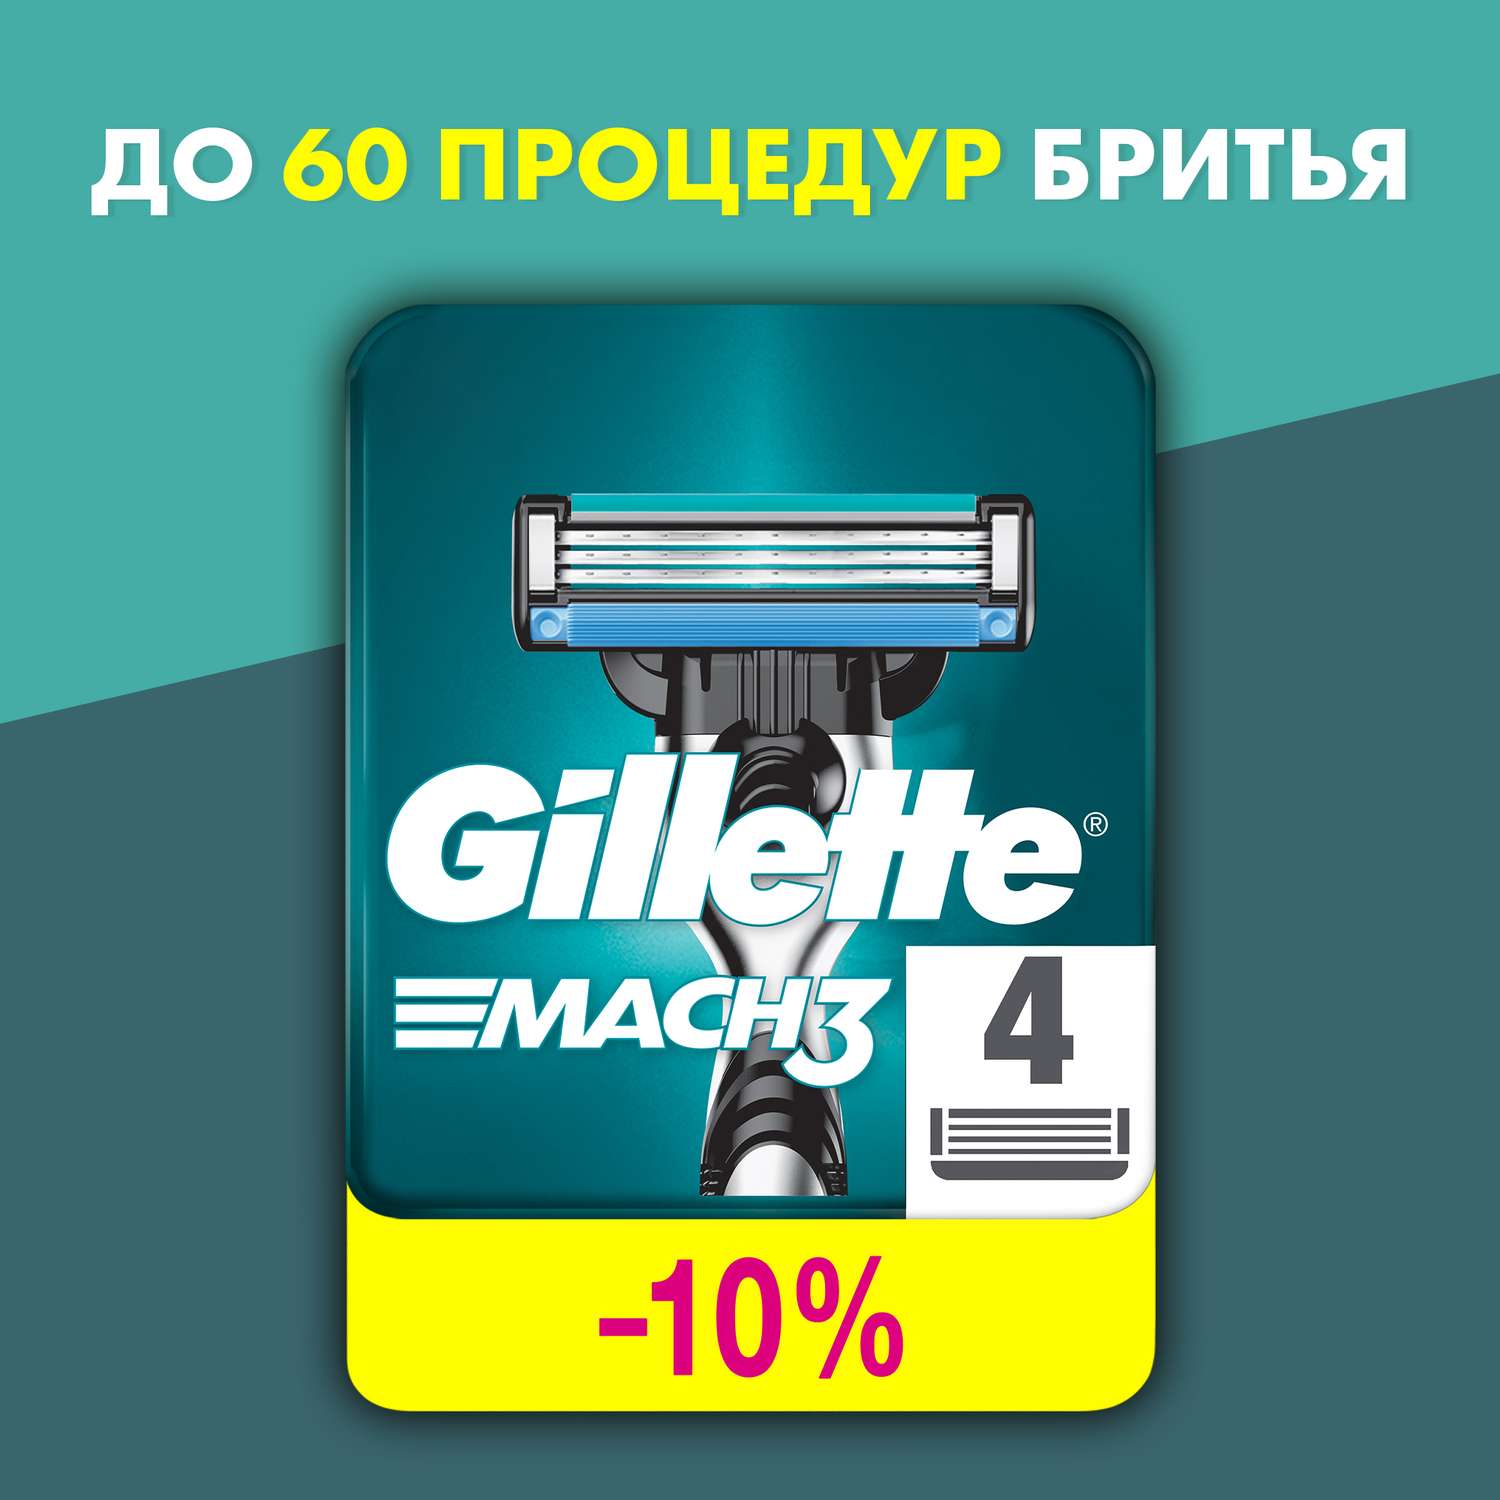 Кассеты сменные для бритья Gillette Mach3 4шт - фото 2